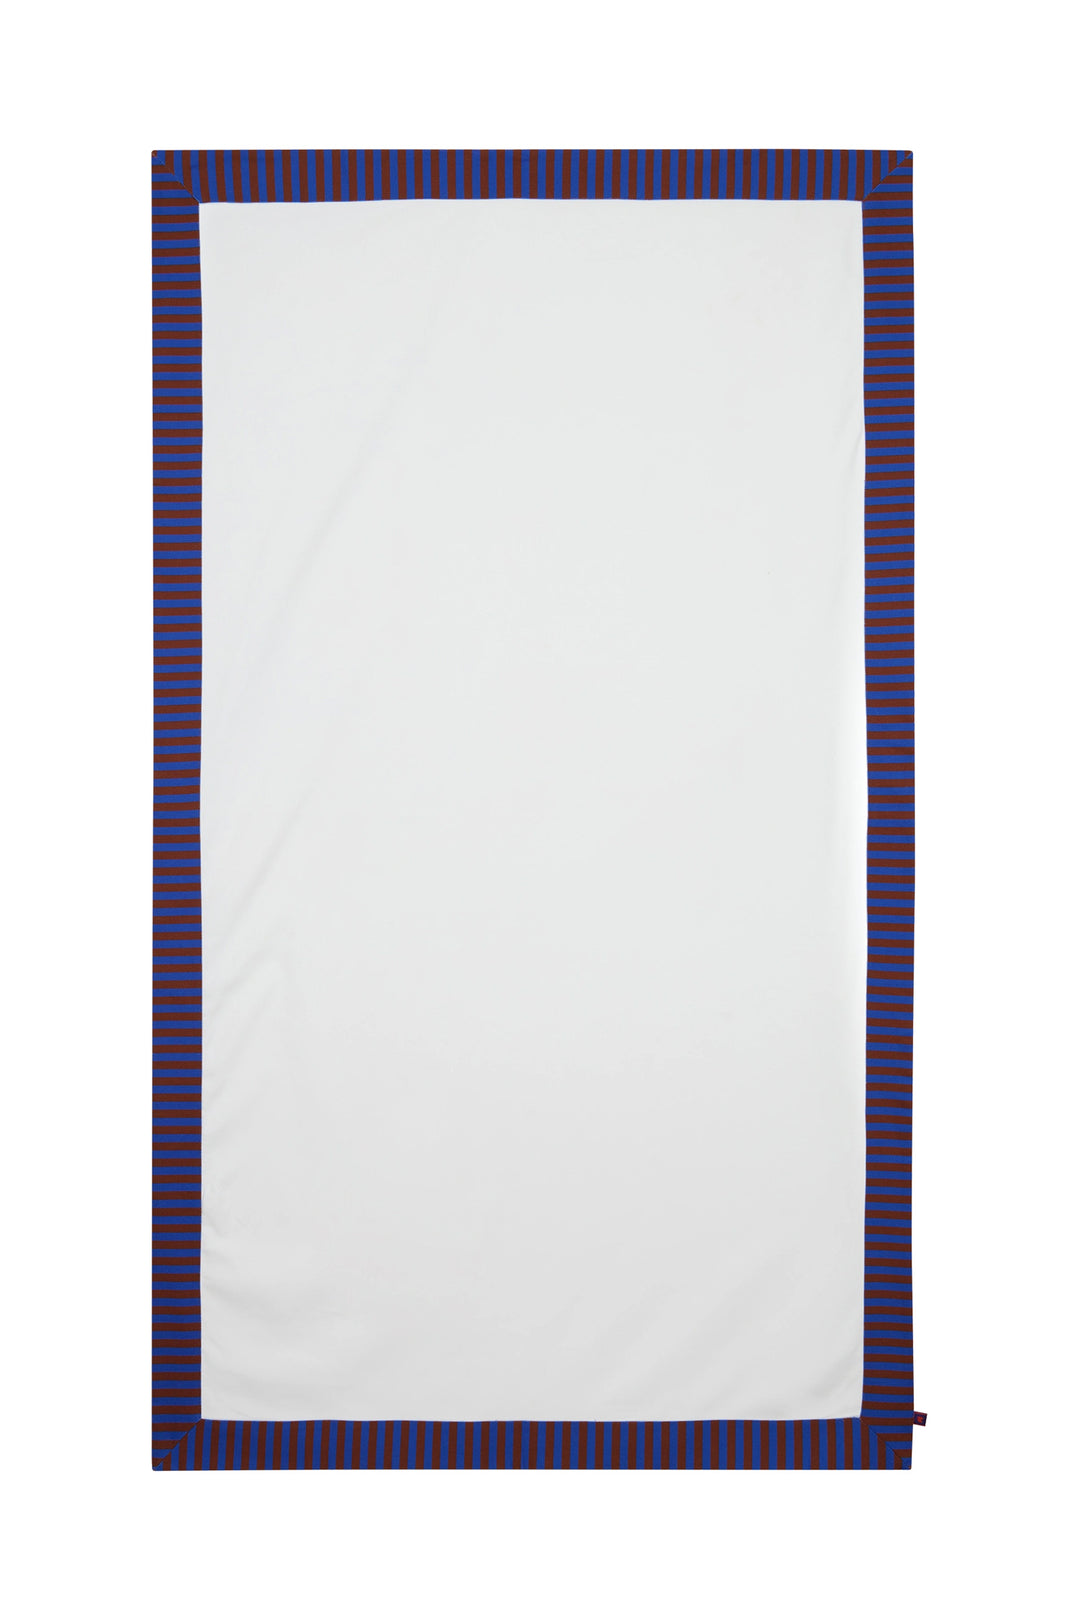 GALLO Telo mare unisex poliestere bianco tinta unita e bordo canvas righe bicolore copiativo - Mancinelli 1954